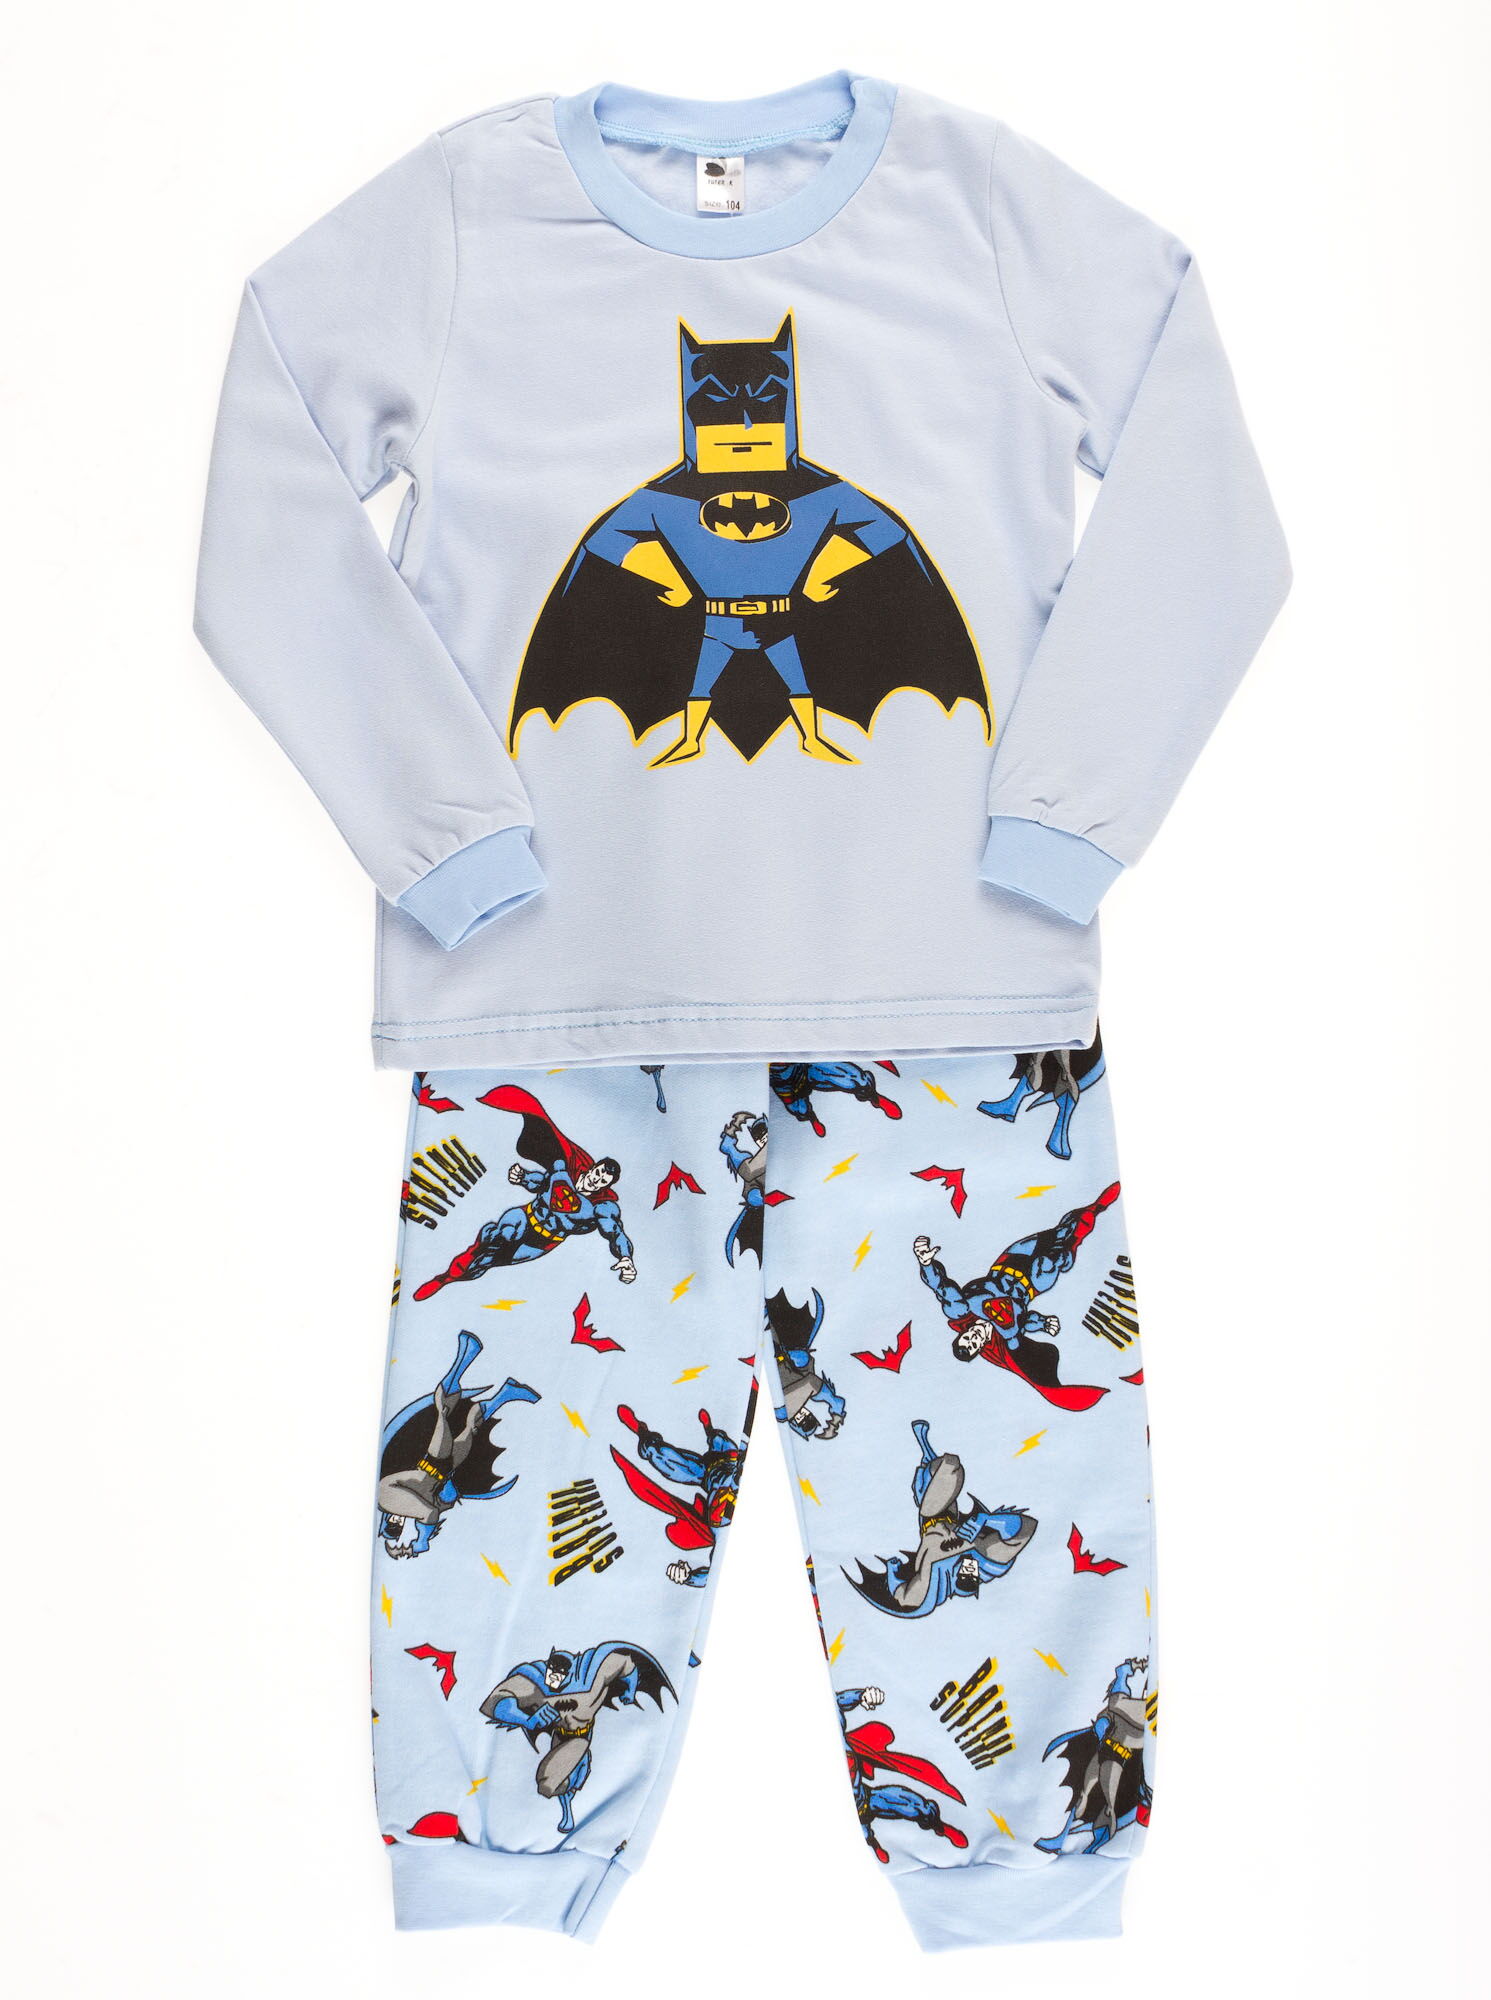 Пижама утепленная для мальчика Valeri tex Бетмен голубая 1626-55-155 - цена